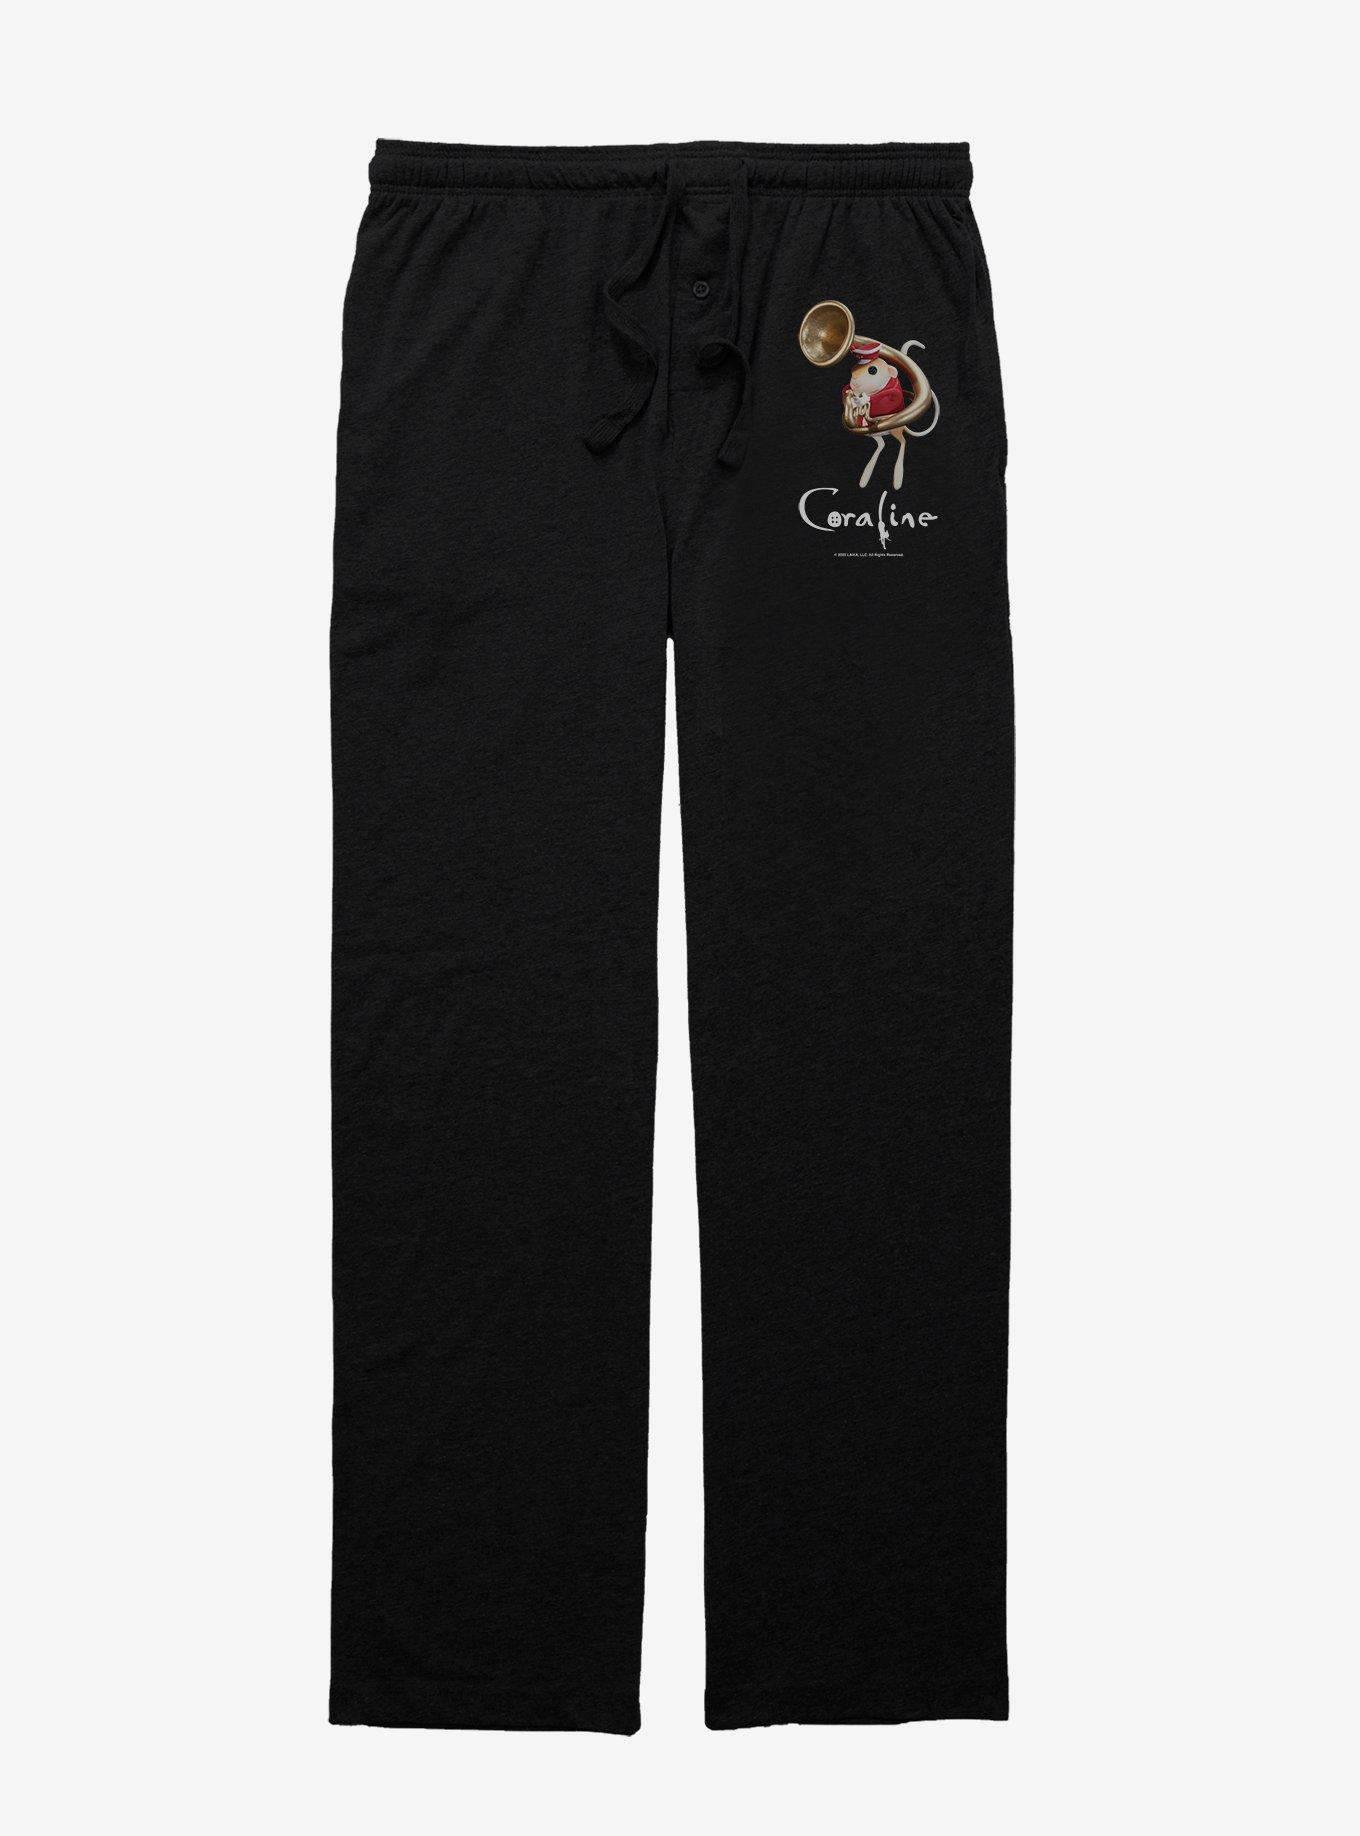 Coraline Circus Mouse Sousaphone Pajama Pants